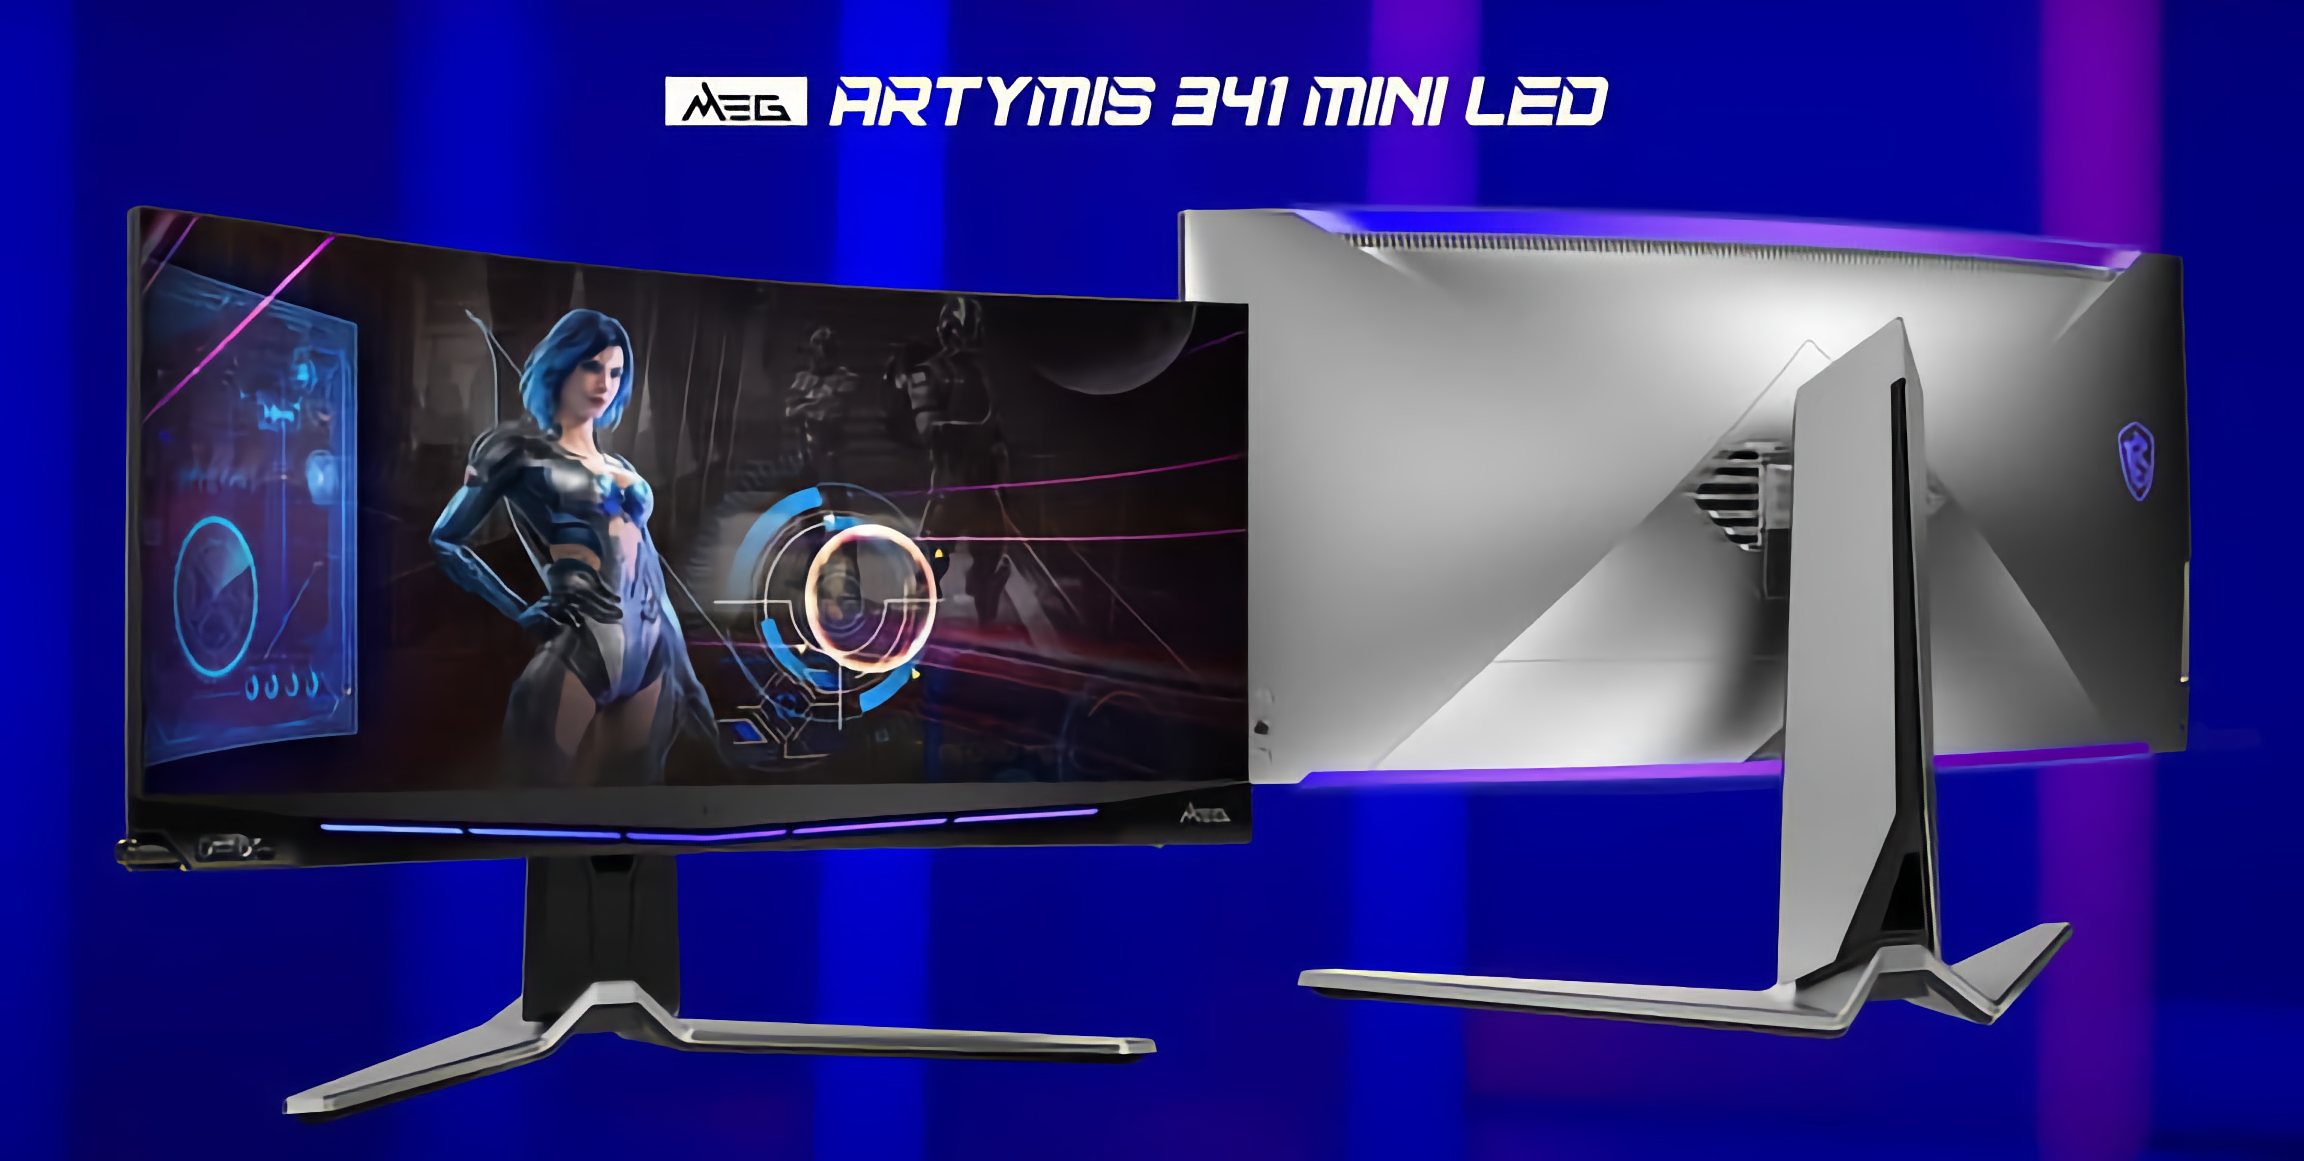 MSI zapowiada dwa monitory do gier z ekranami OLED/mini-LED o przekątnej do 55 cali